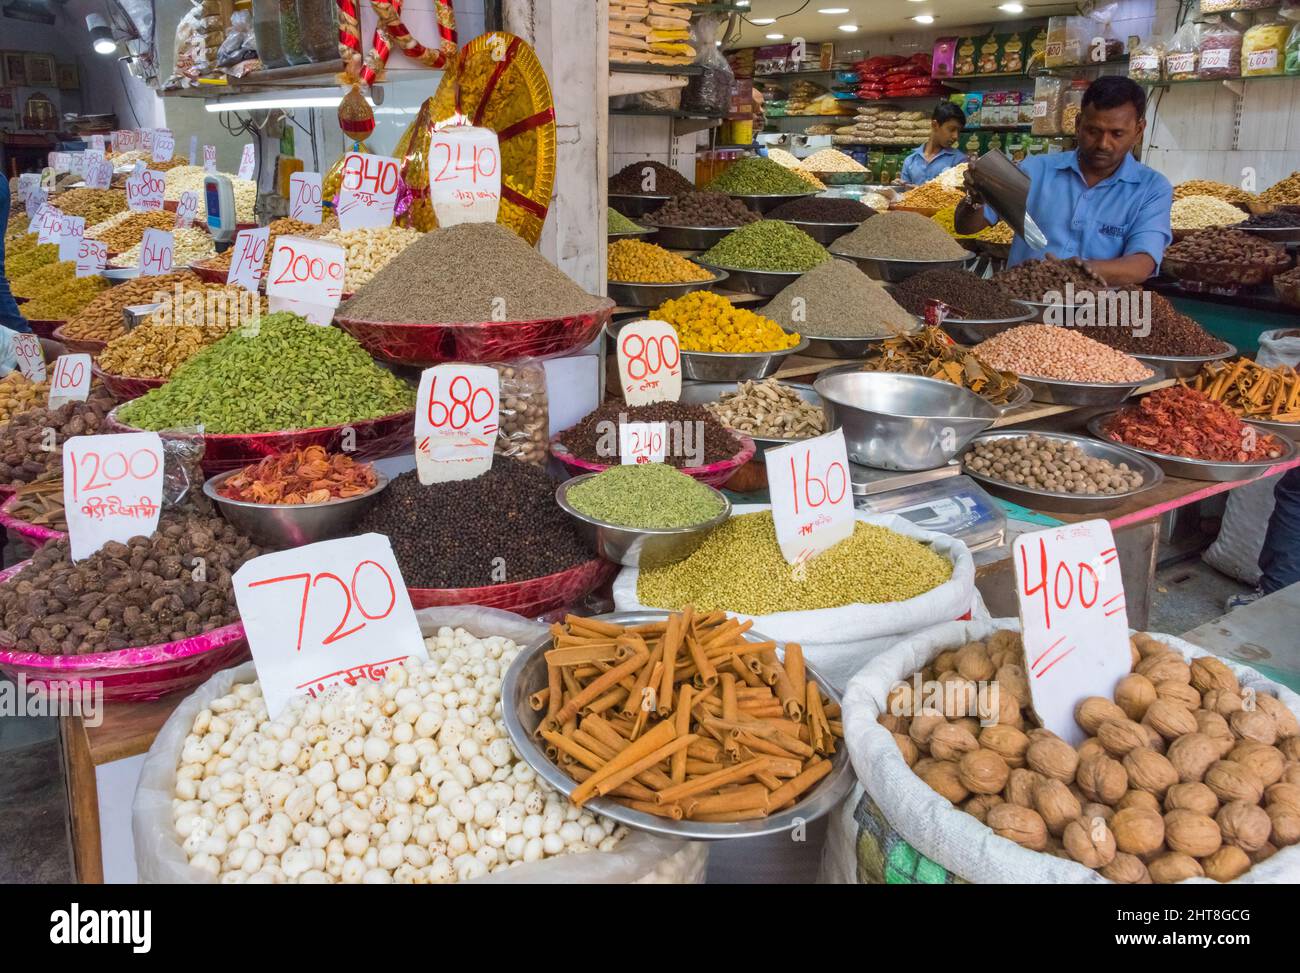 Vendita di spezie e noci al vecchio mercato delle spezie, Chandni Chowk (Moonlight Square), Delhi, India Foto Stock